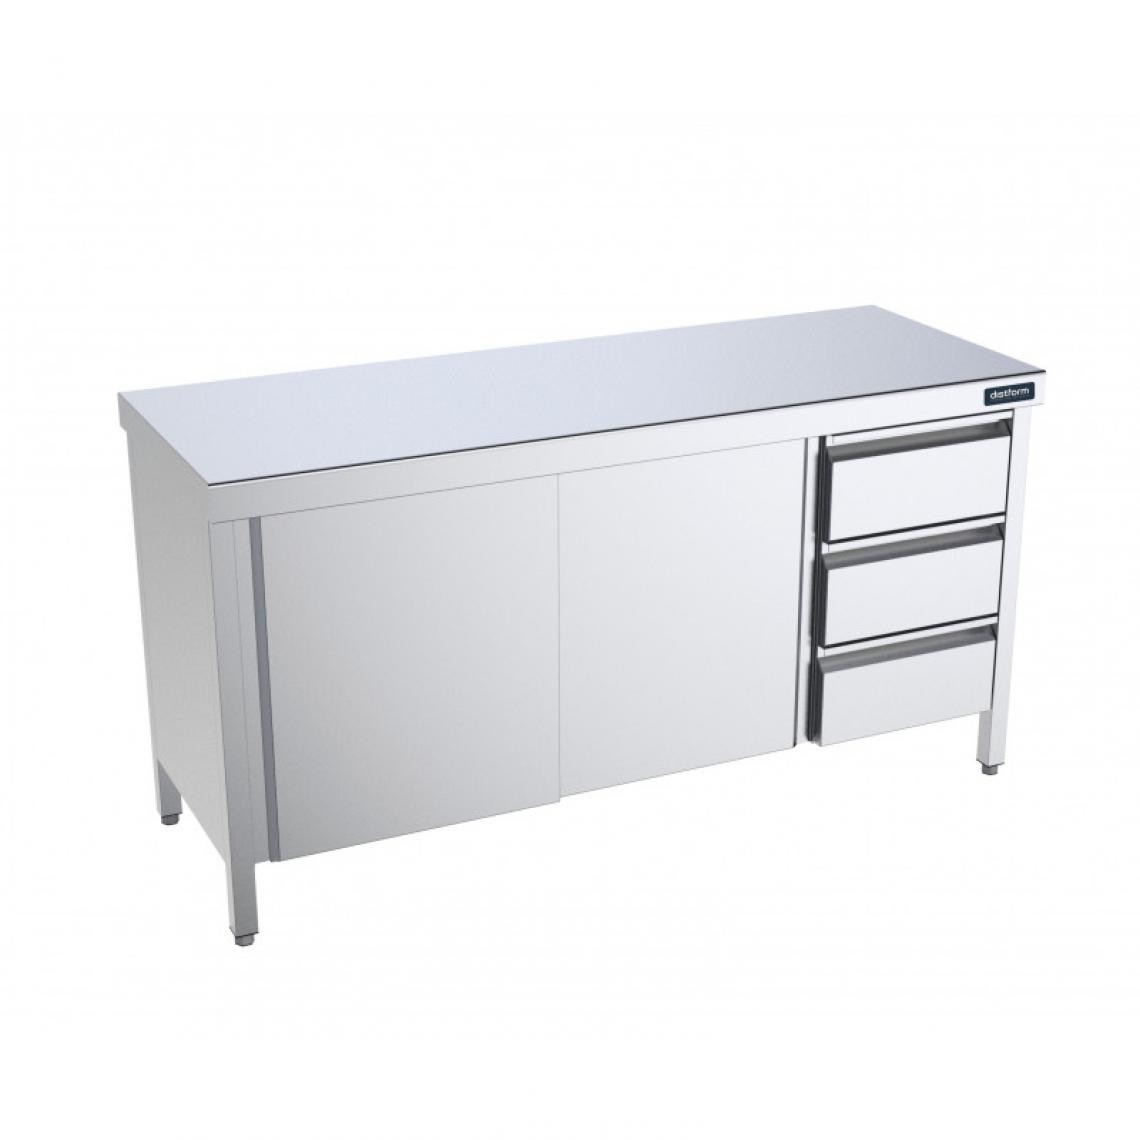 DISTFORM - Table Inox centrale avec portes coulissantes et tiroirs à droite - Gamme 600 - Distform - Acier inoxydable1600x600 - Tables à manger